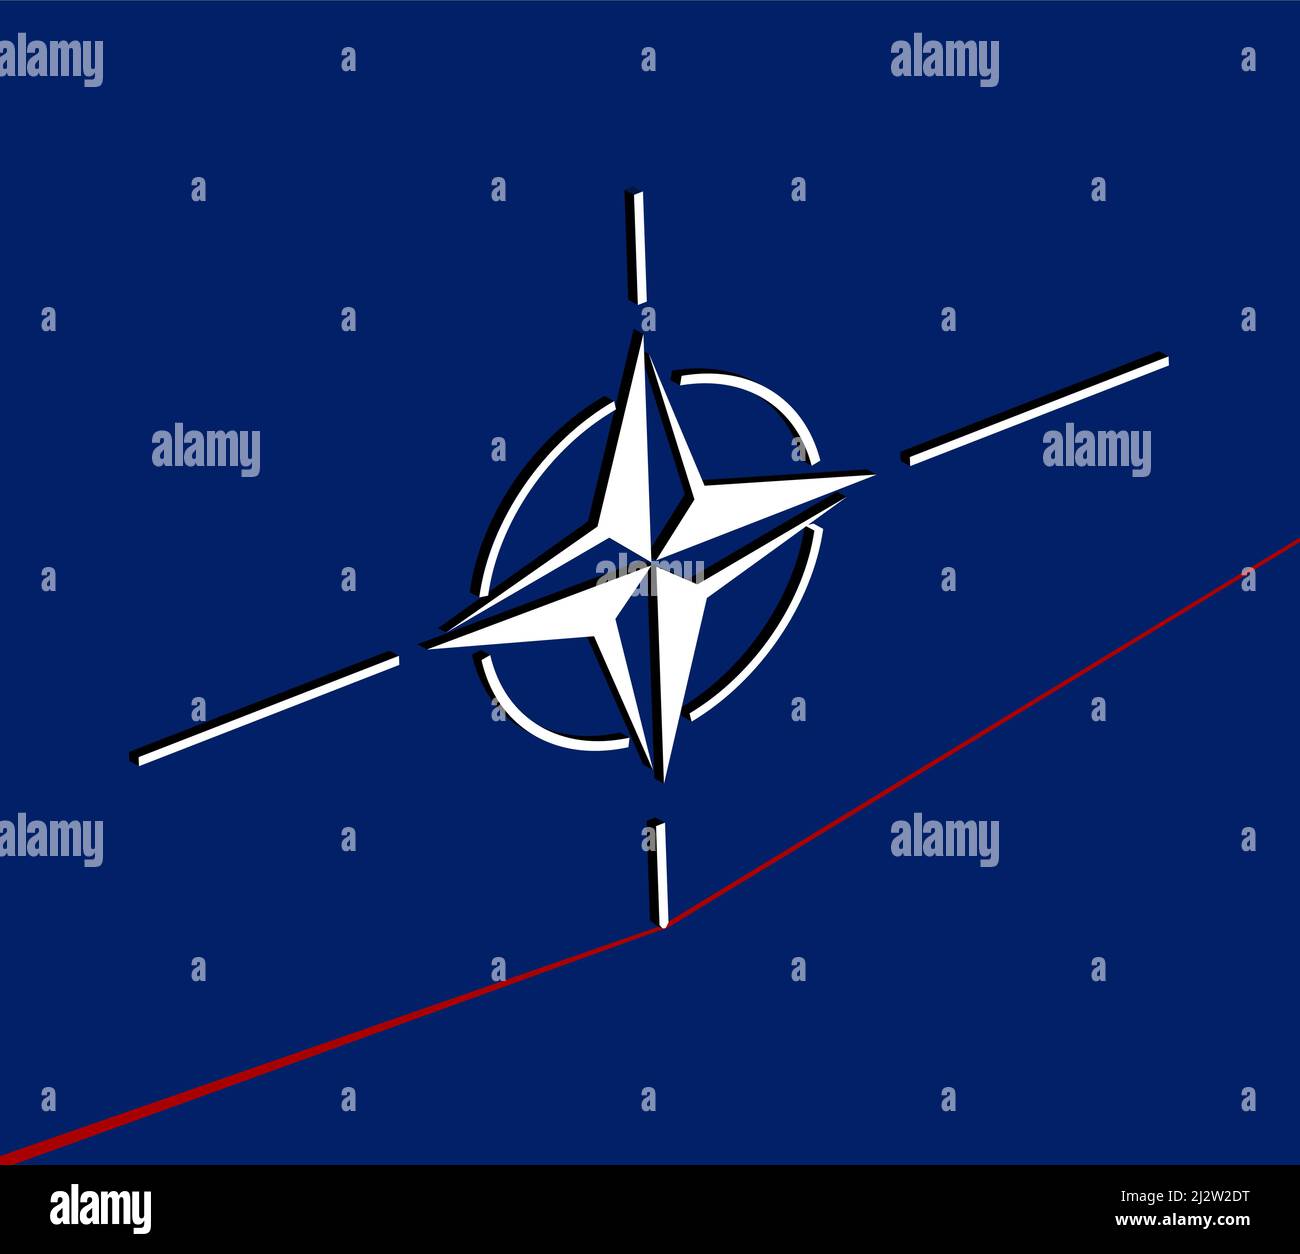 Bruxelles, Belgique - 24 mars 2022 : symbole de l'OTAN essayant d'équilibrer en ligne rouge, illustration de l'Organisation du Traité de l'Atlantique Nord, également connue sous le nom d'OTA Illustration de Vecteur